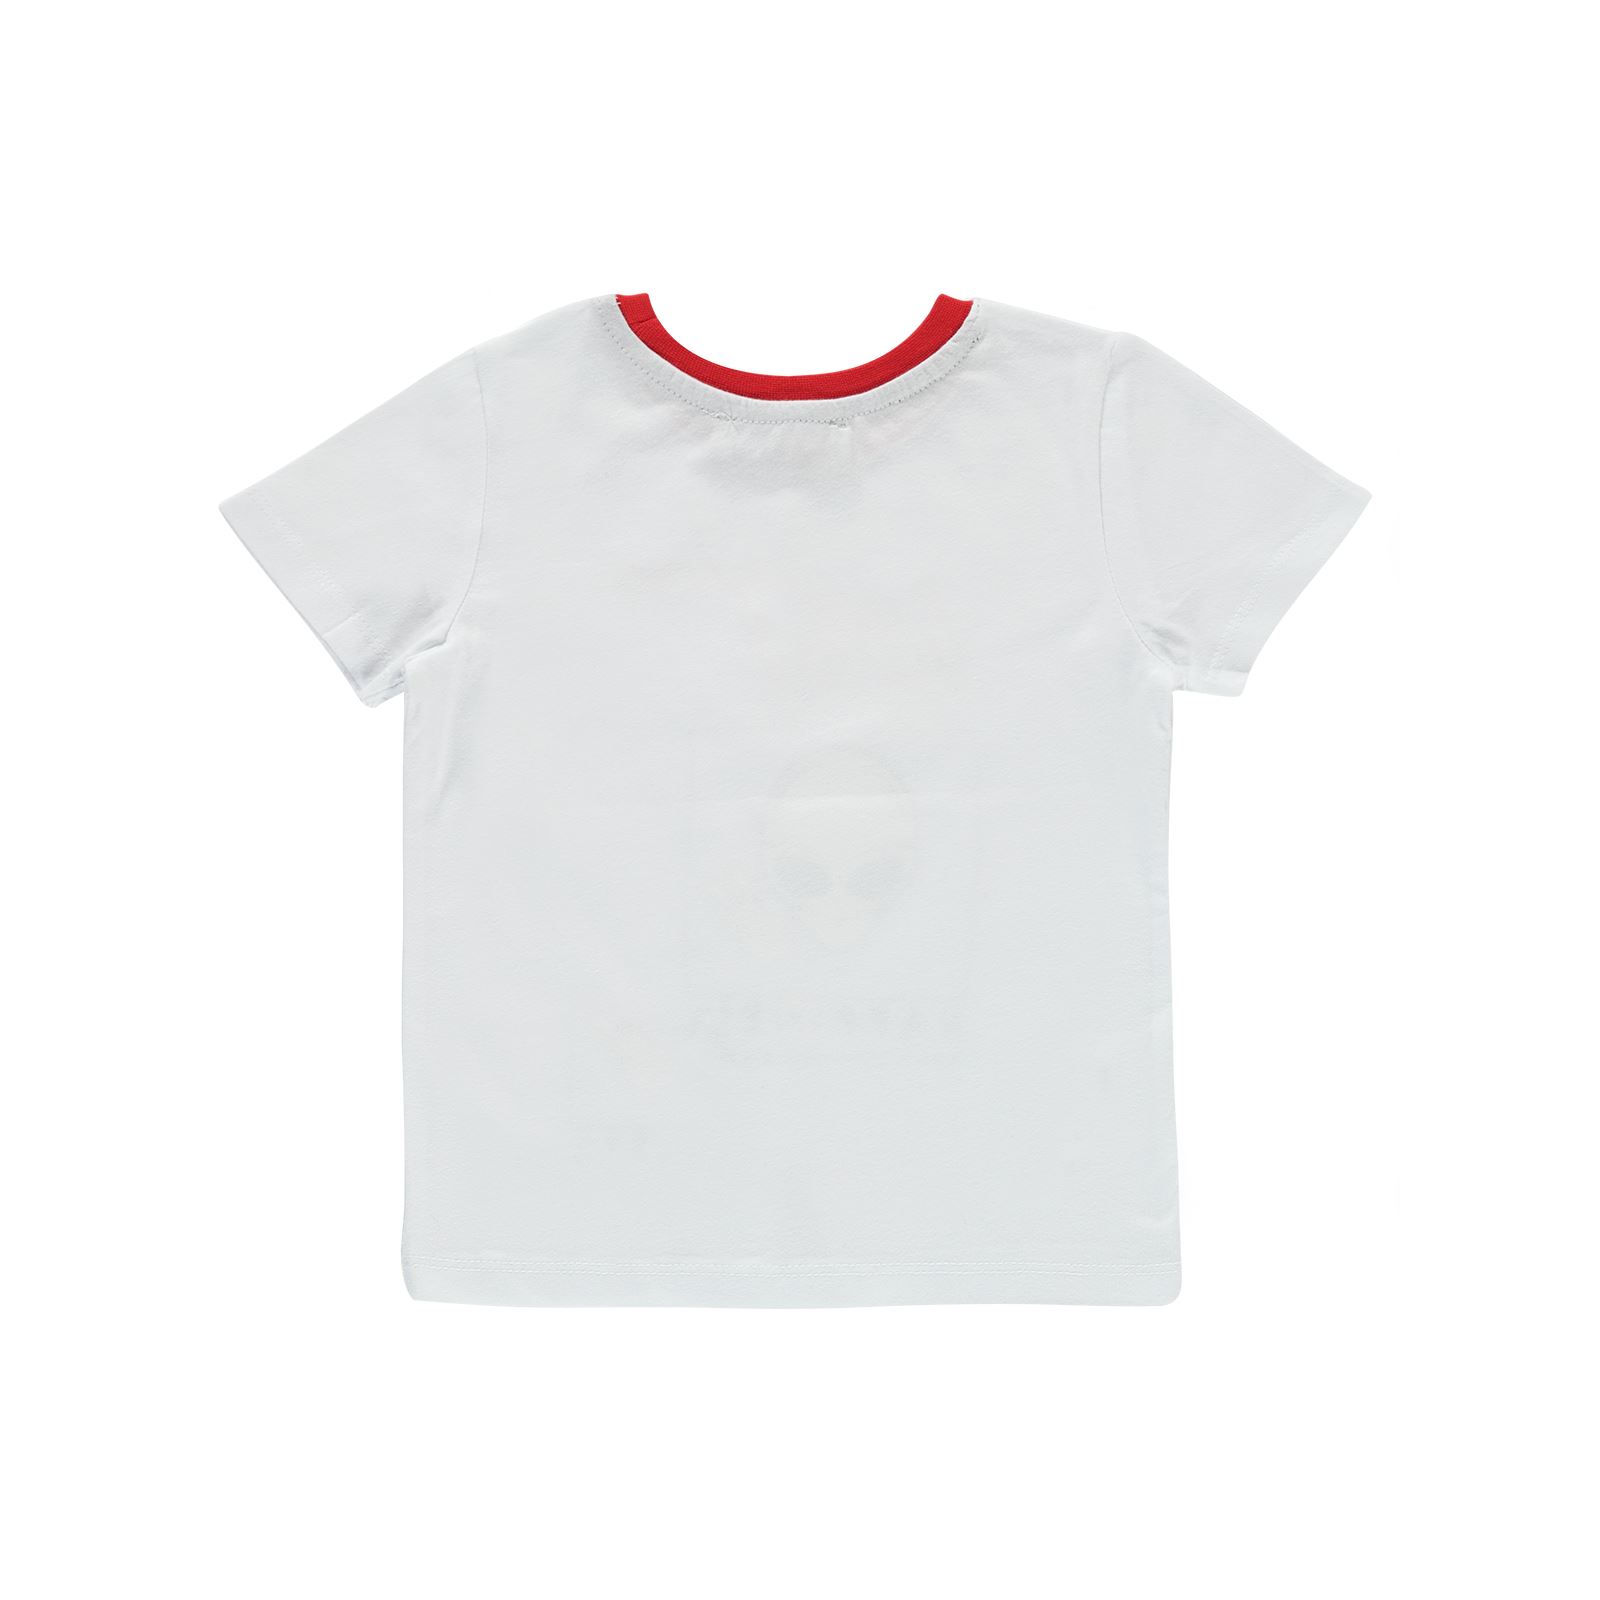 Small Socıety Erkek Çocuk Tişört 2-7 Yaş Beyaz